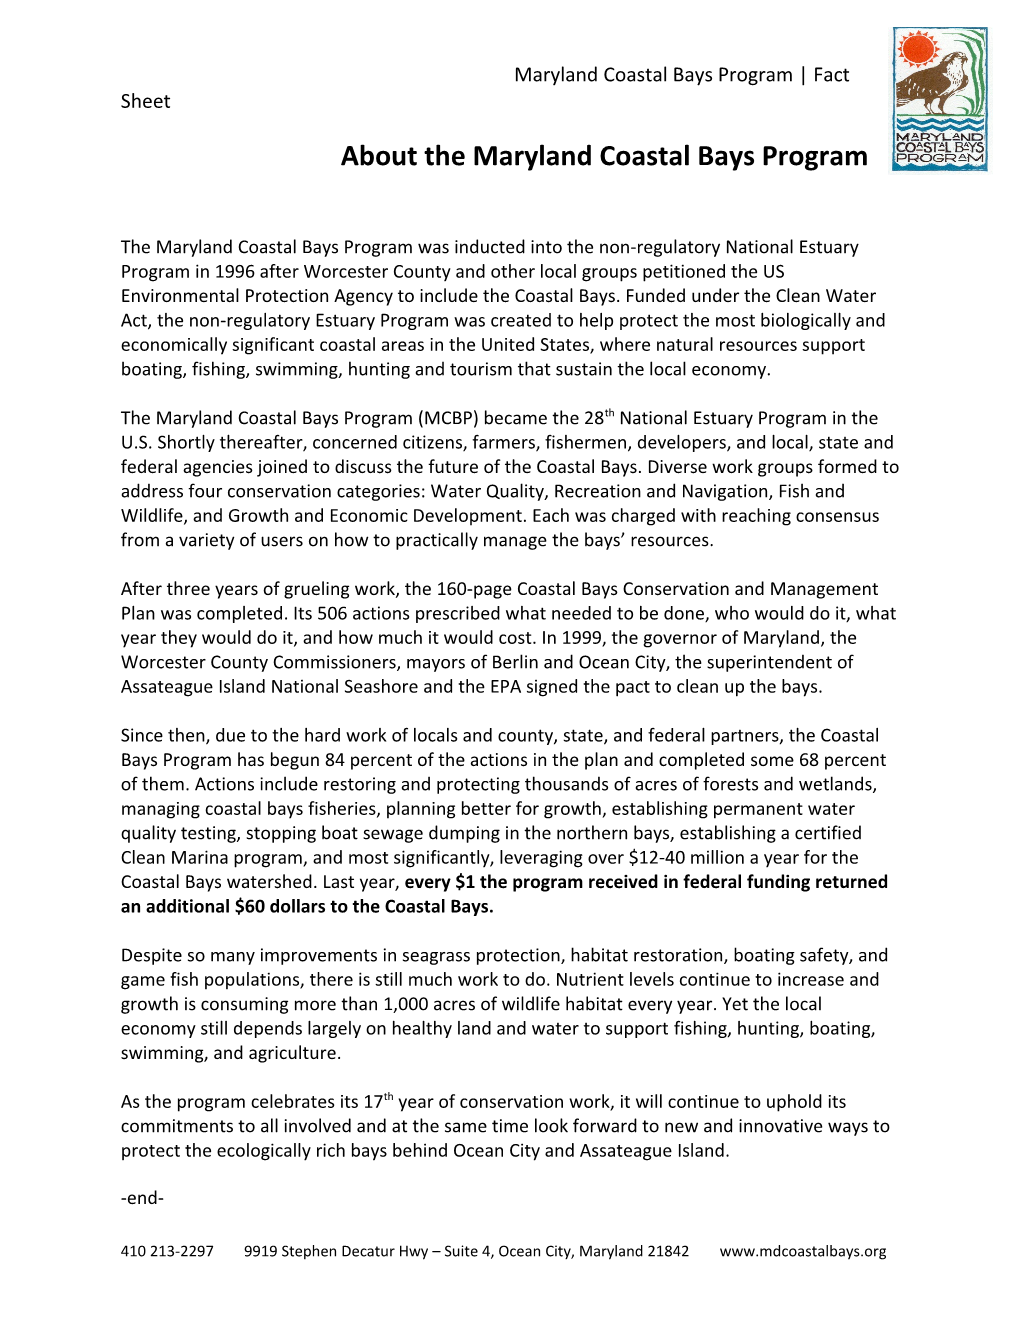 About the Maryland Coastal Bays Program